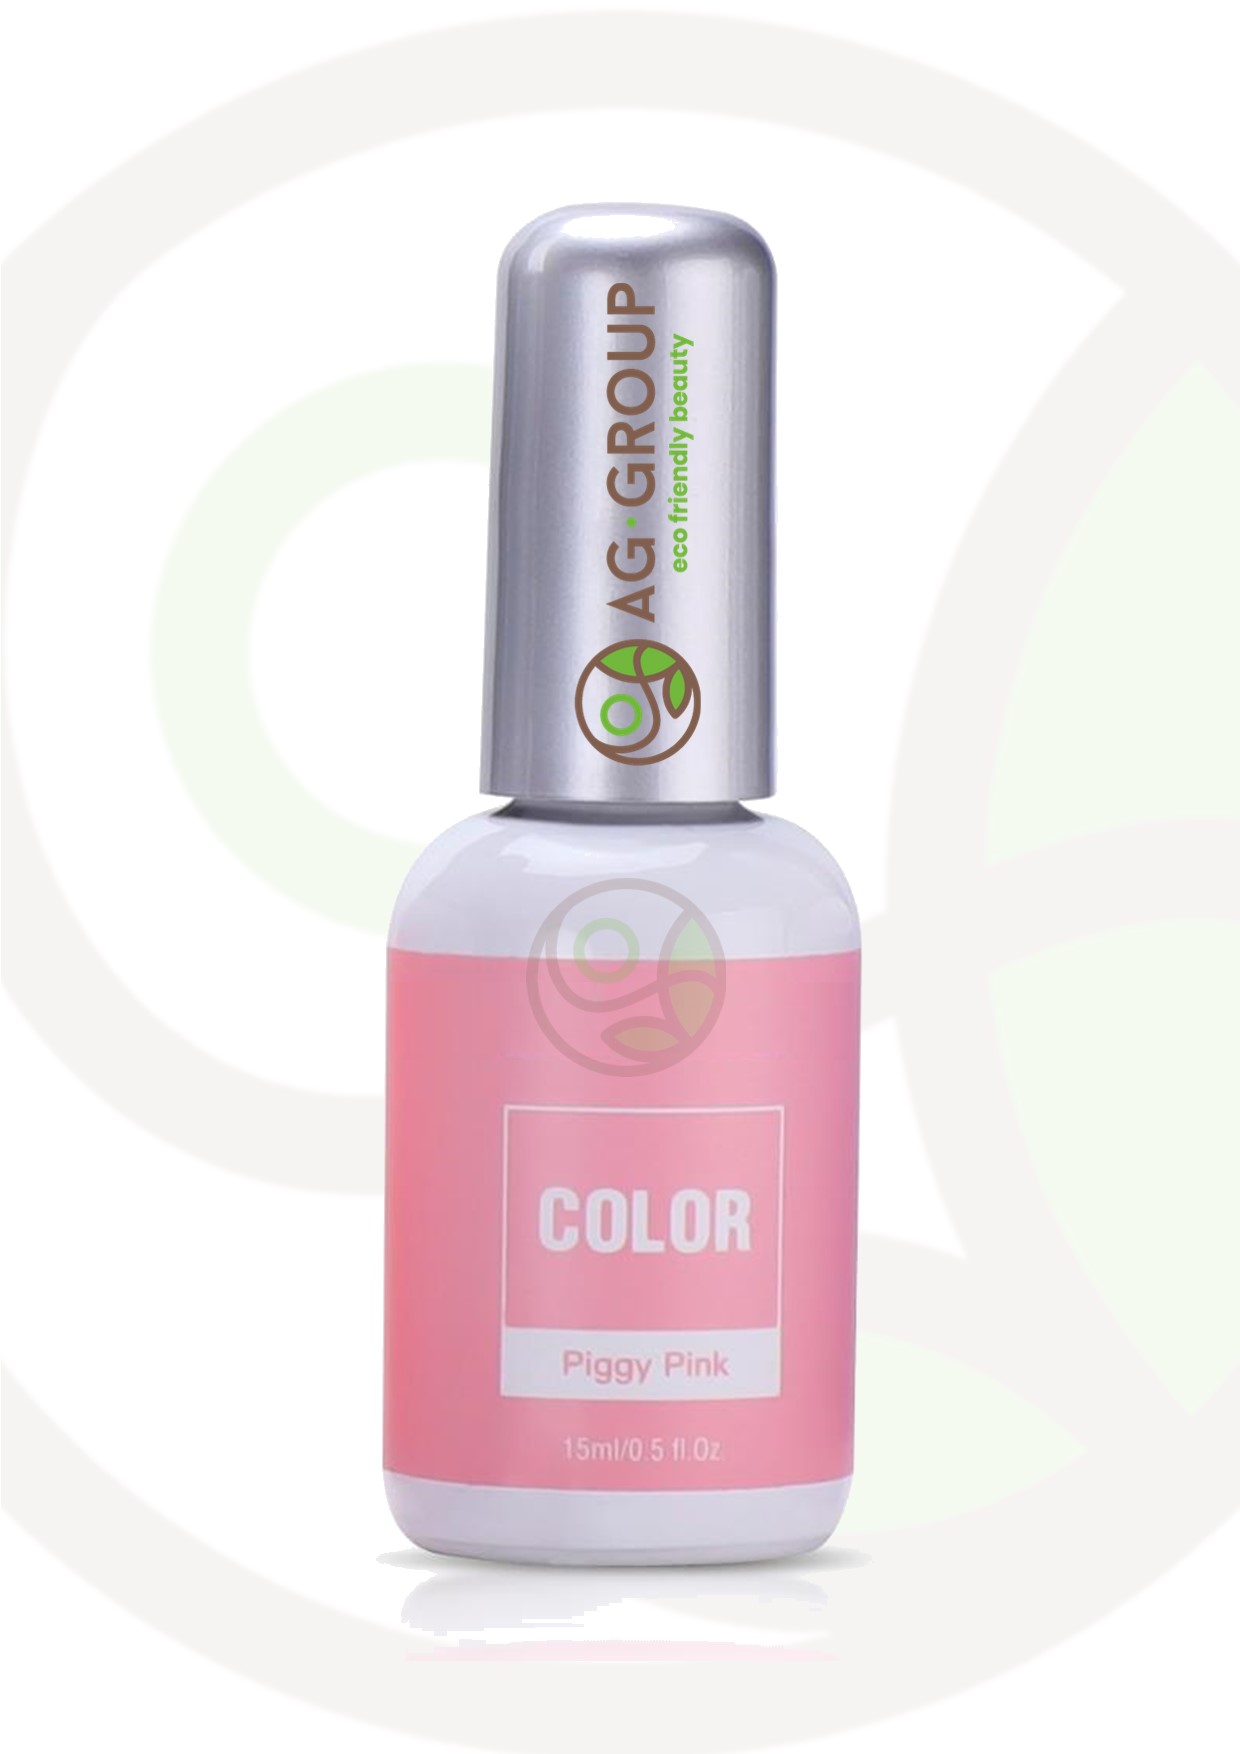 Featured image for “Gel polish soak -off led/uv- color piggy pink”